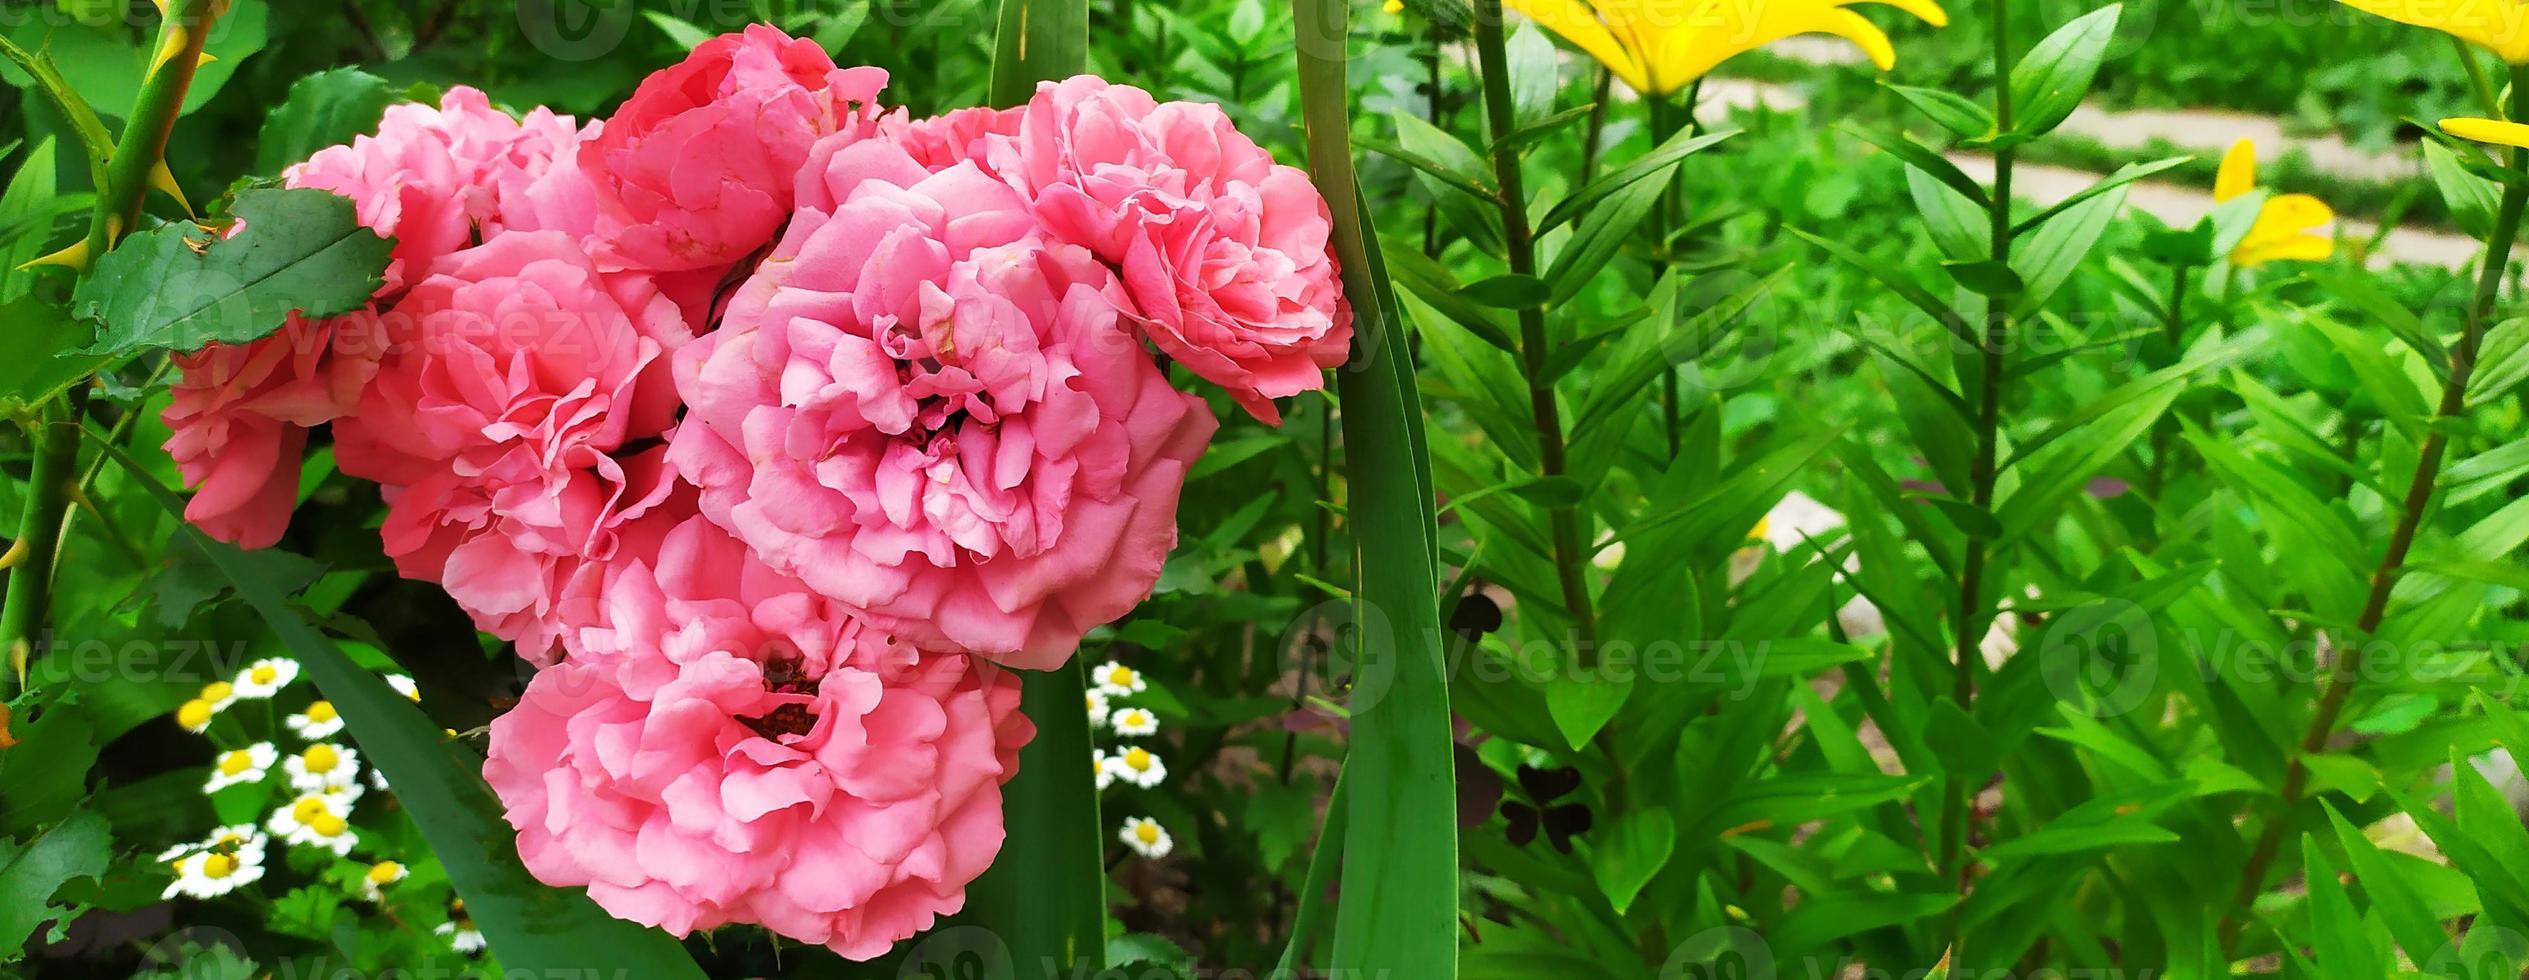 pinke Rose. Blühender Strauch im Garten im Sommer. floraler Hintergrund foto